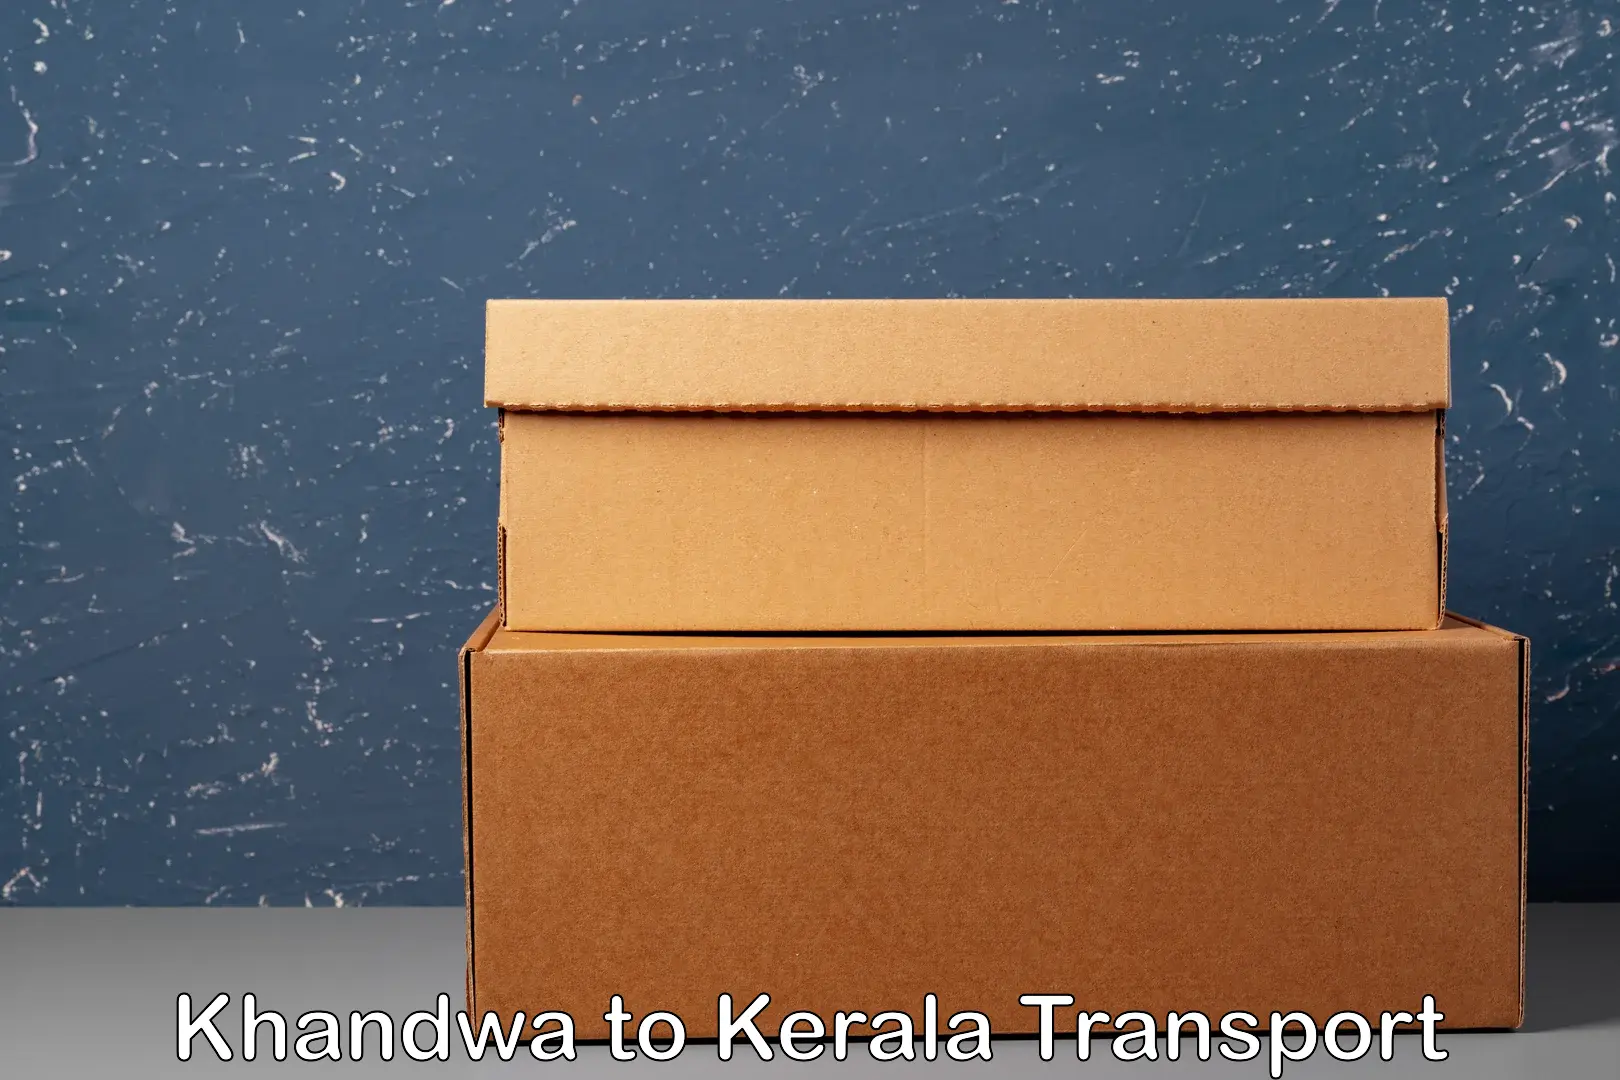 Air freight transport services Khandwa to Kalpetta